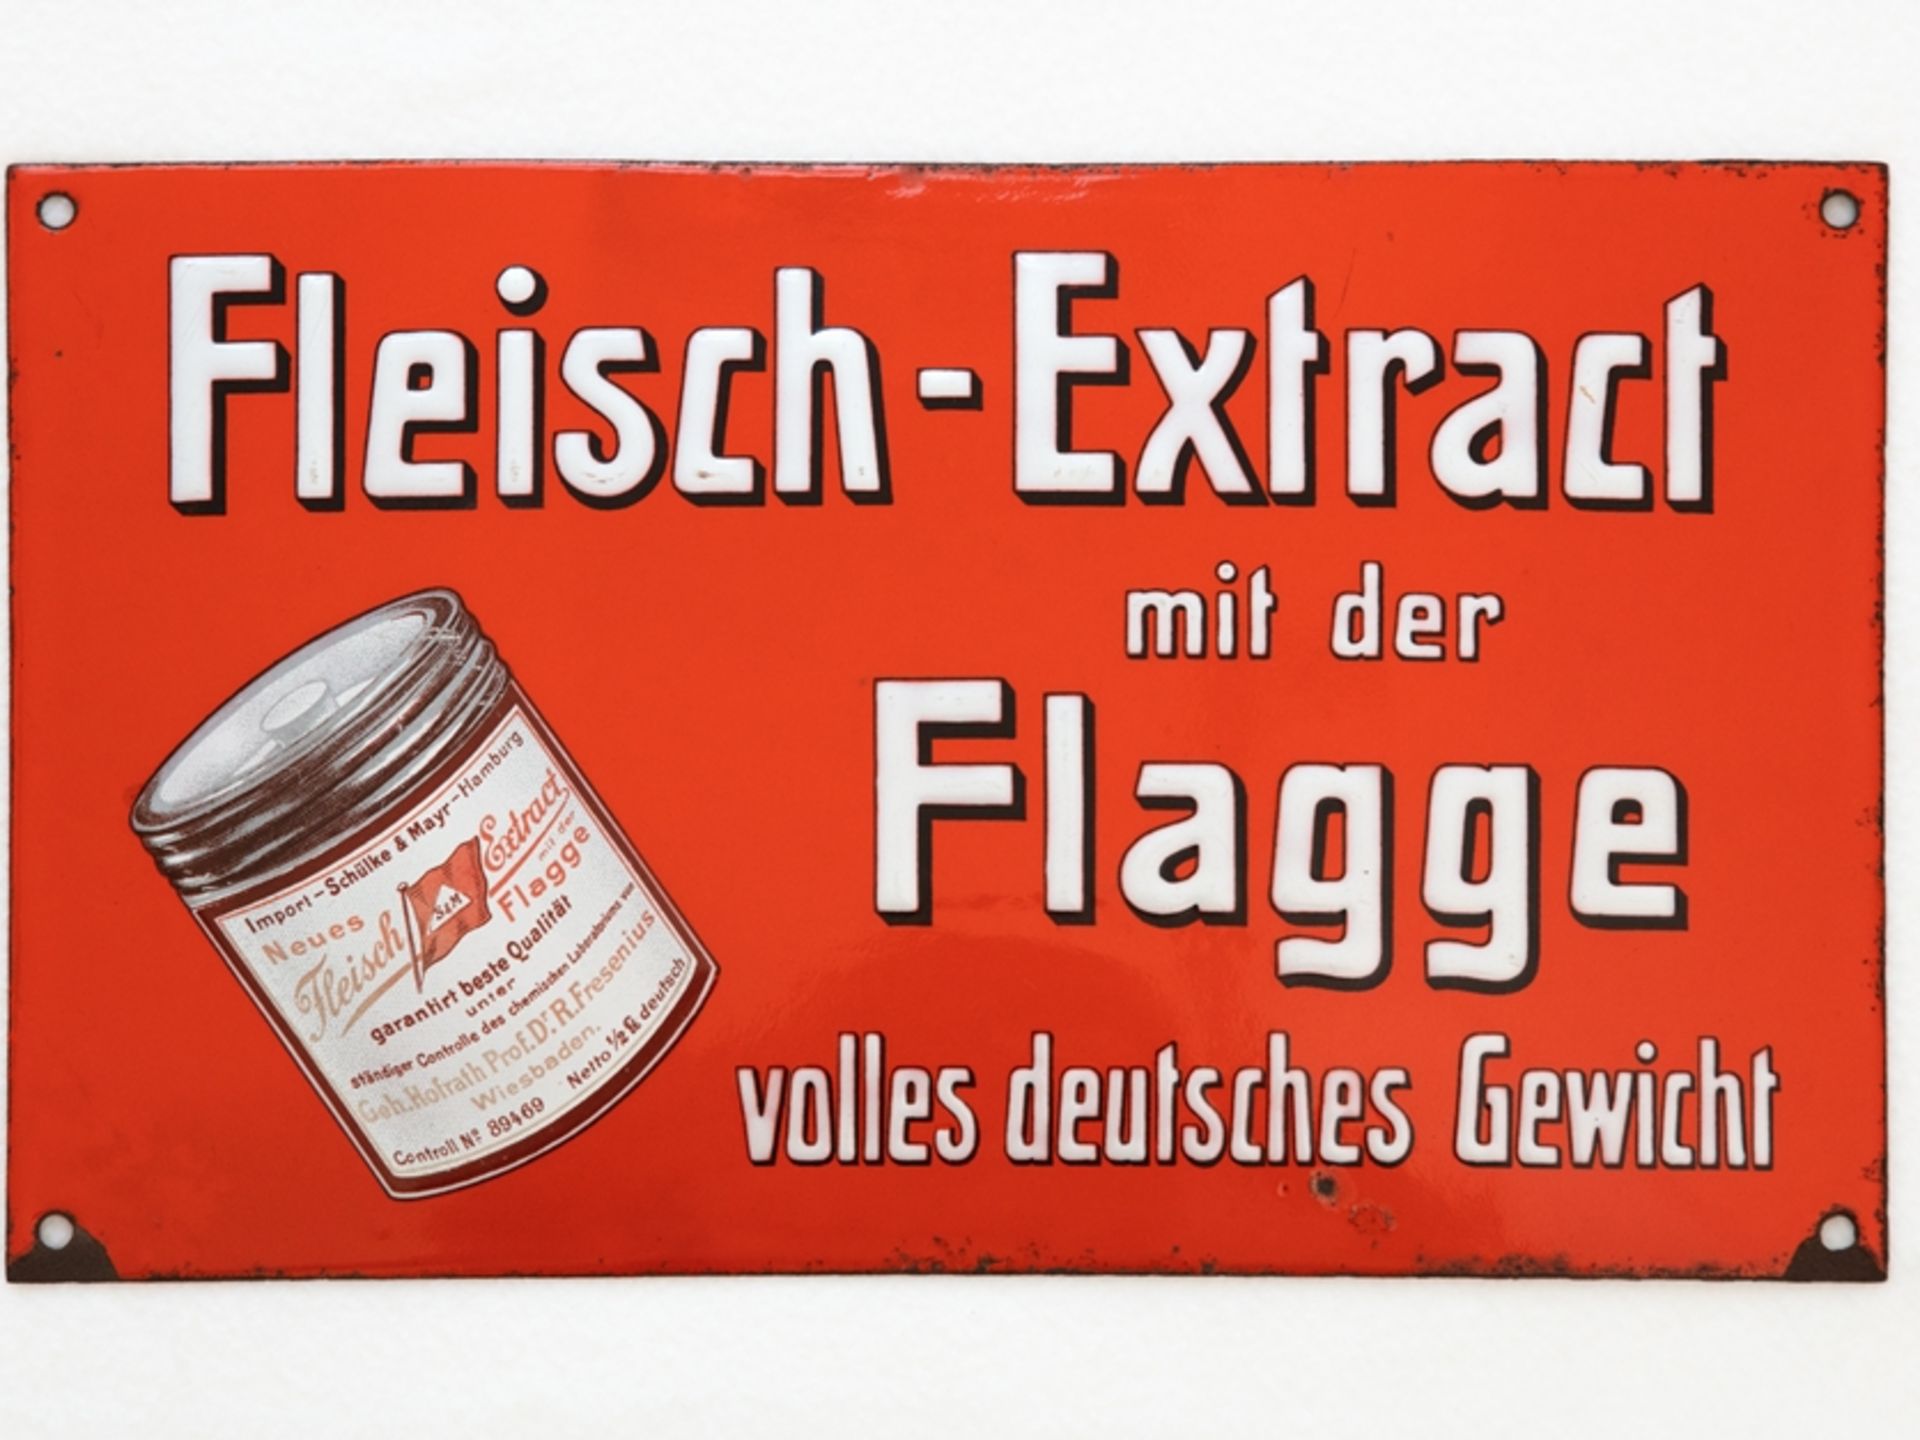 Enamel sign Fleisch Extract mit der Flagge, Hamburg, around 1900 - Image 7 of 7